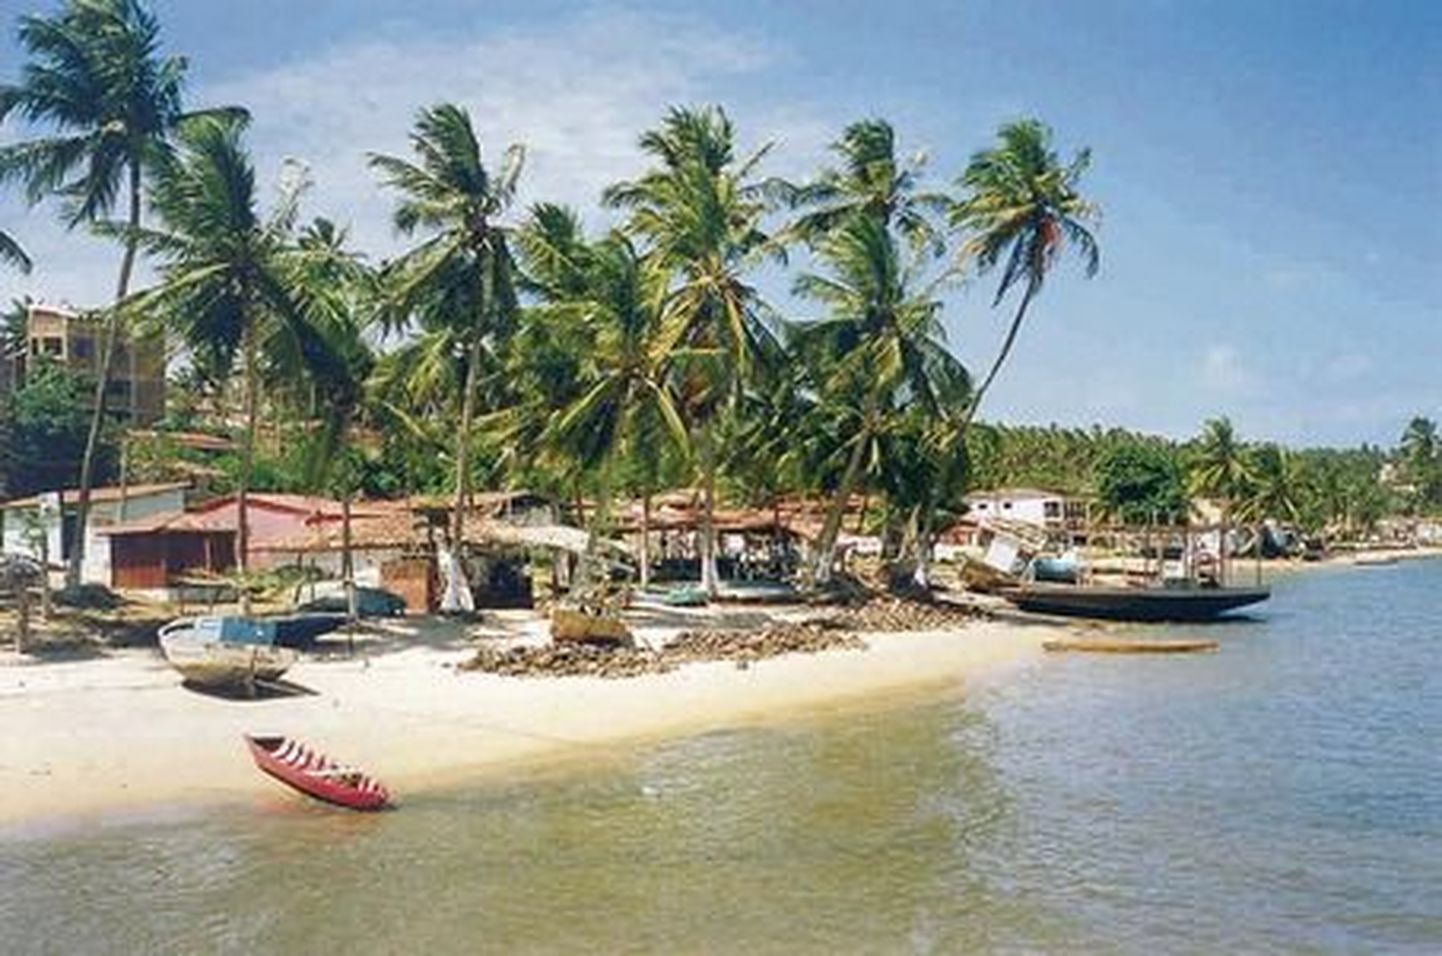 Cunhau kaluriküla paikneb Brasiilia kirderegioonis Urimatau jõe ääres. Tähelepanelikul silmitsemisel võib märgata, et palmidel ja paatidel on üsna olematu vari  päike paistab peaaegu seniidist.